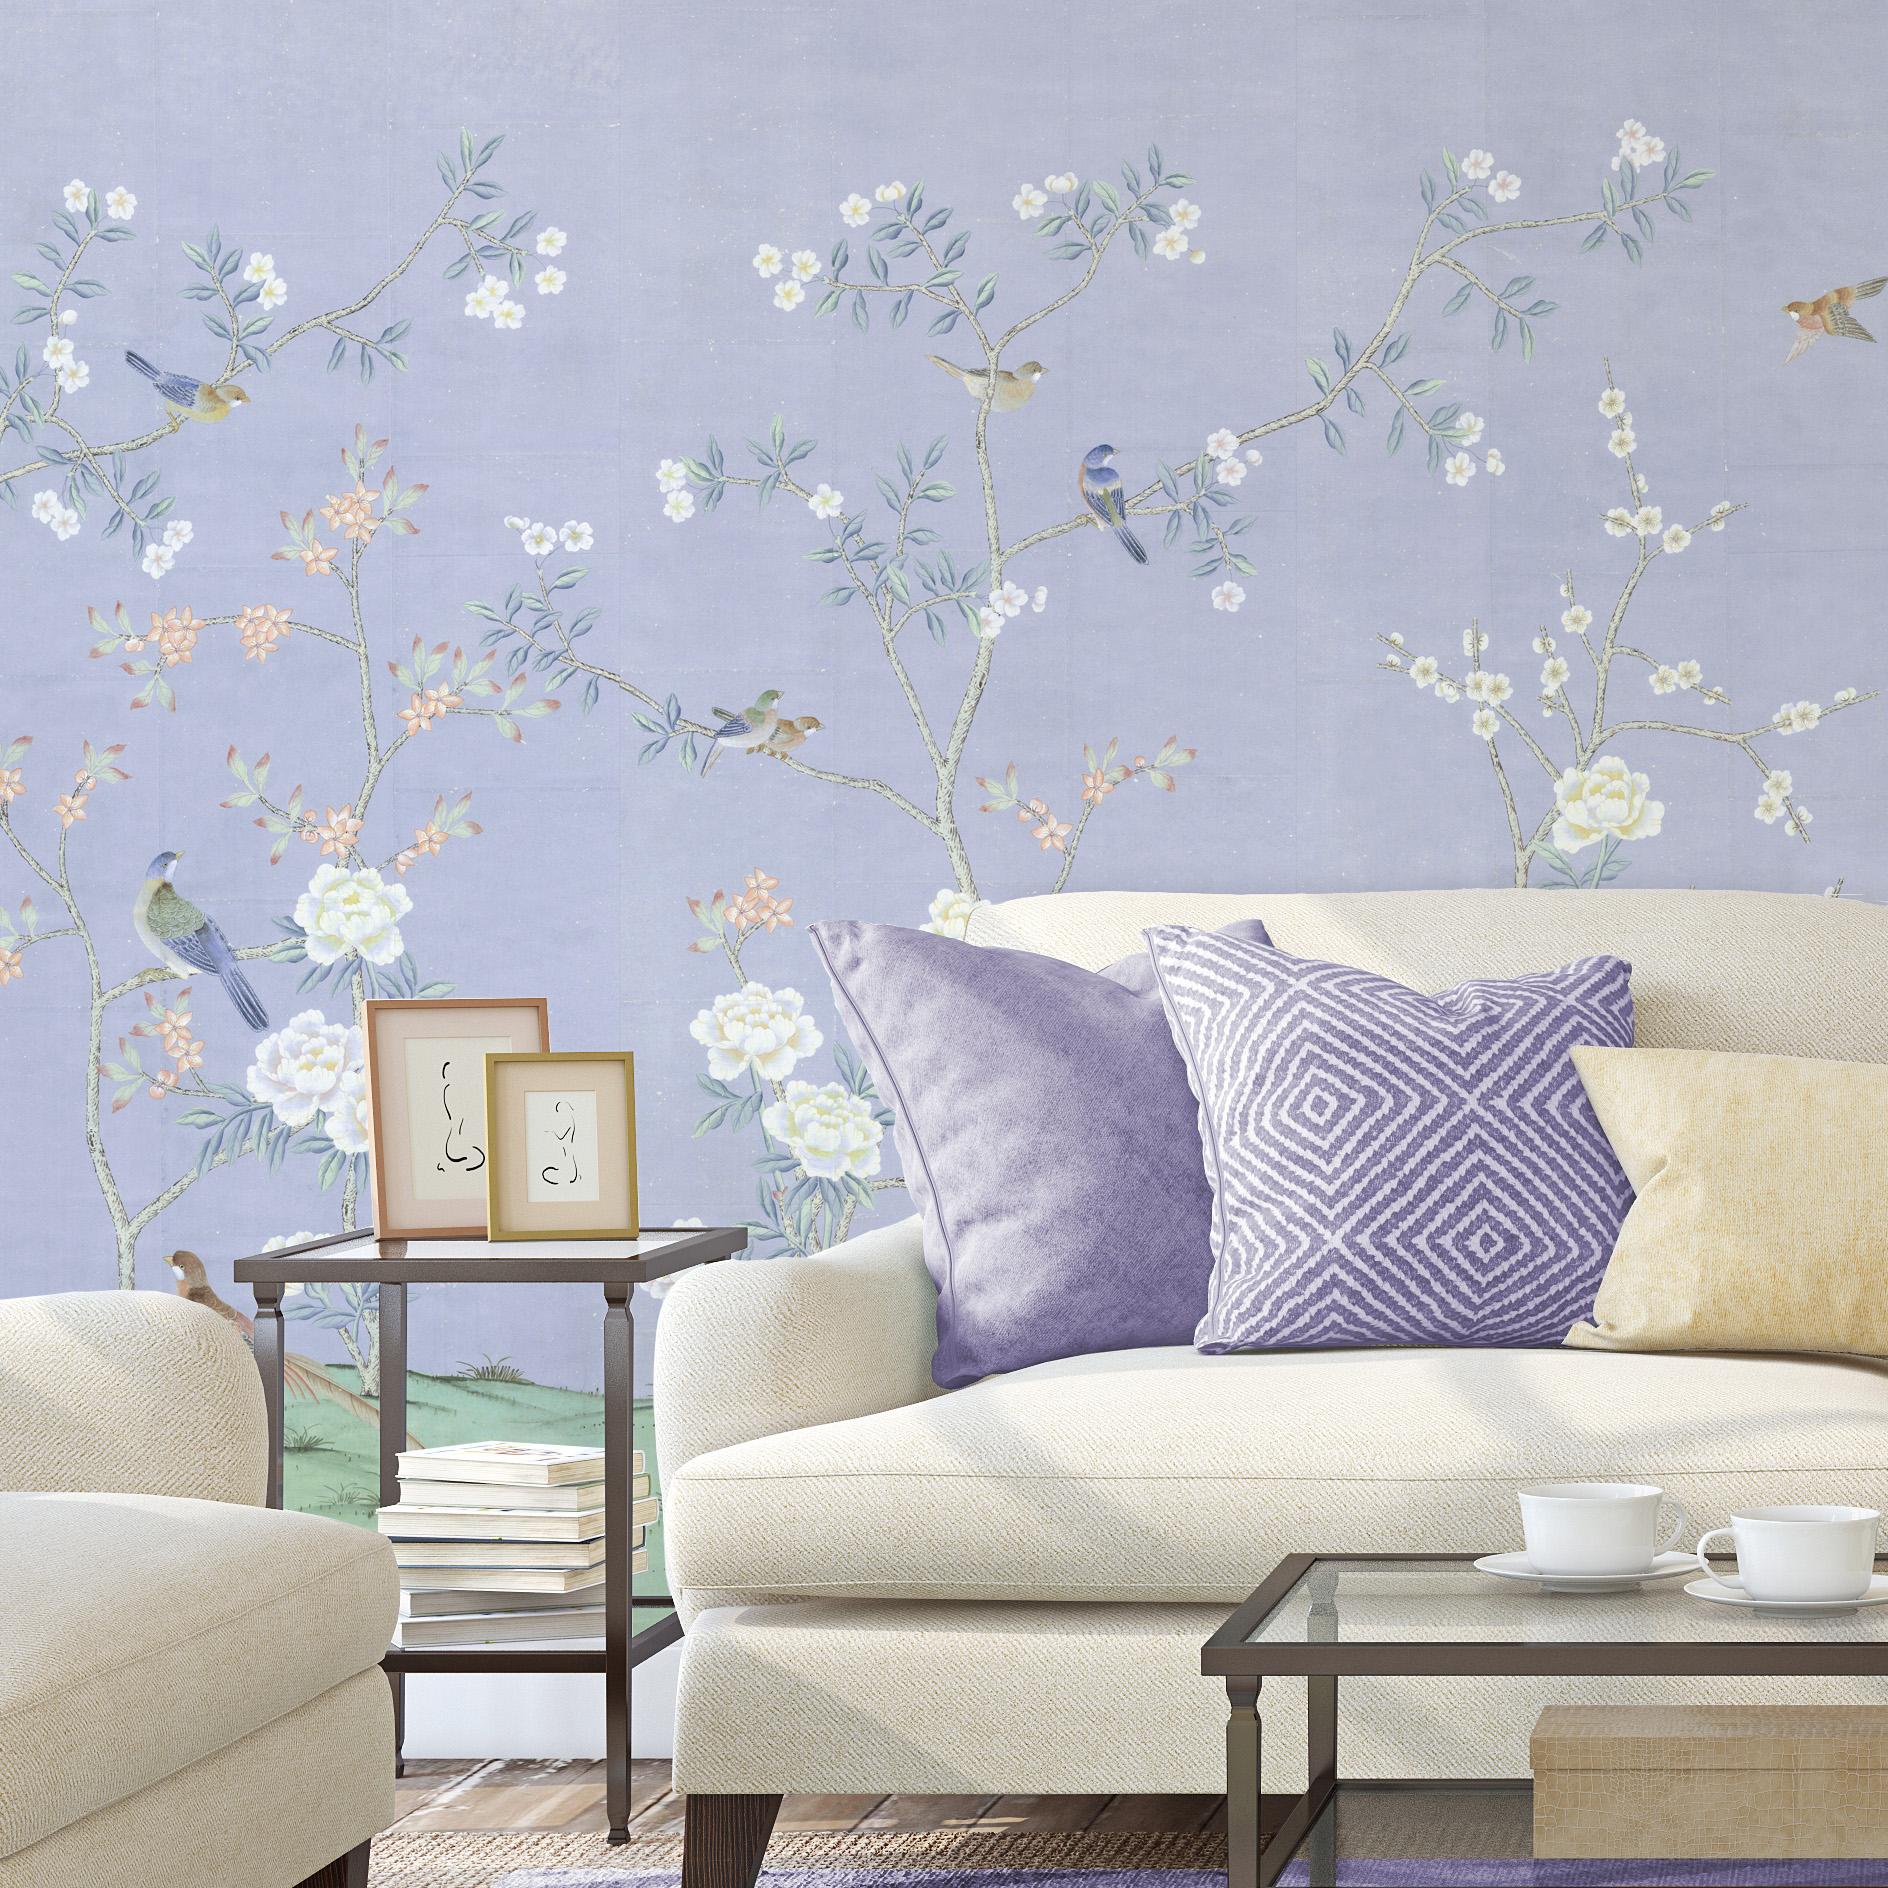 Maysong Hyacinth est un magnifique papier peint mural chinoiserie avec de grandes fleurs blanches sur un fond violet apaisant. Ce motif peut ajouter de l'intérêt visuel ou de la couleur à une chambre, un salon ou toute autre pièce de votre